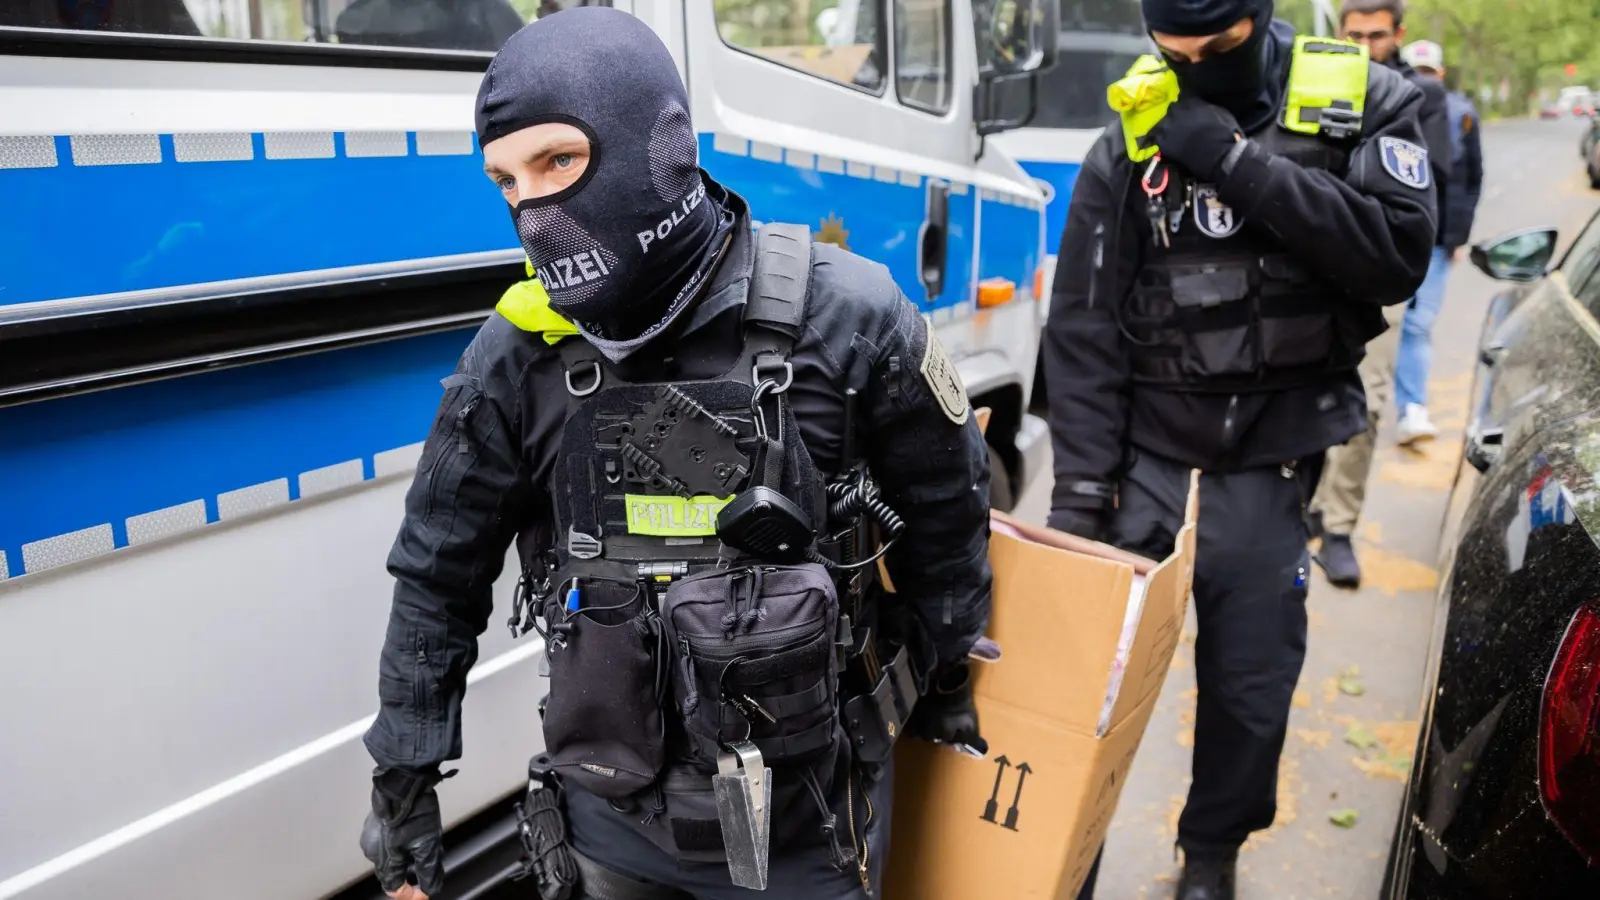 Polizisten tragen bei einer Hausdurchsuchung in Berlin-Kreuzberg einen Karton zu einem Fahrzeug. (Foto: Christoph Soeder/dpa)